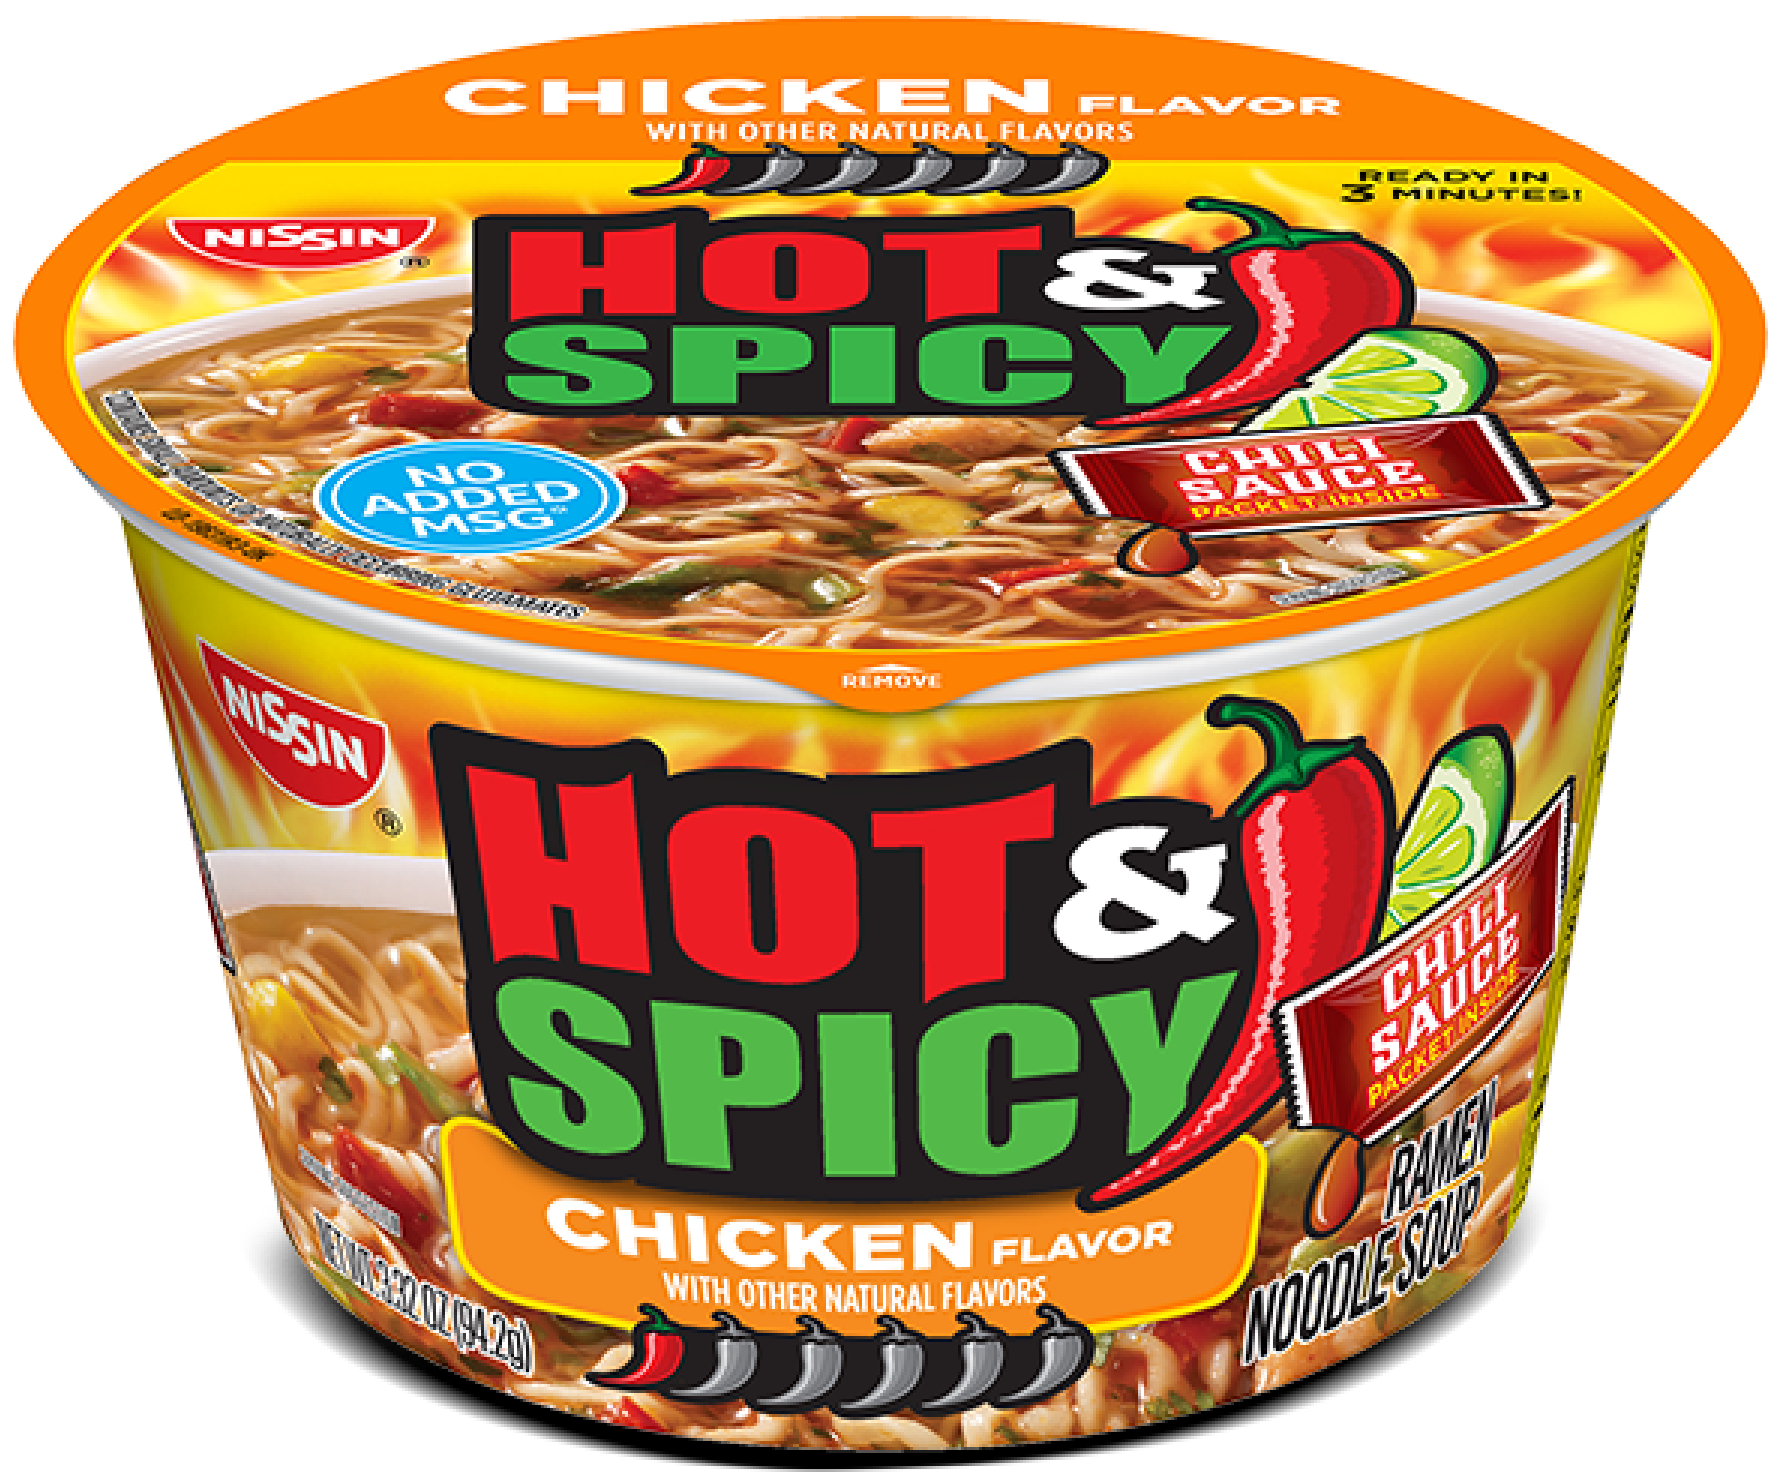 Hot & Spicy Chicken